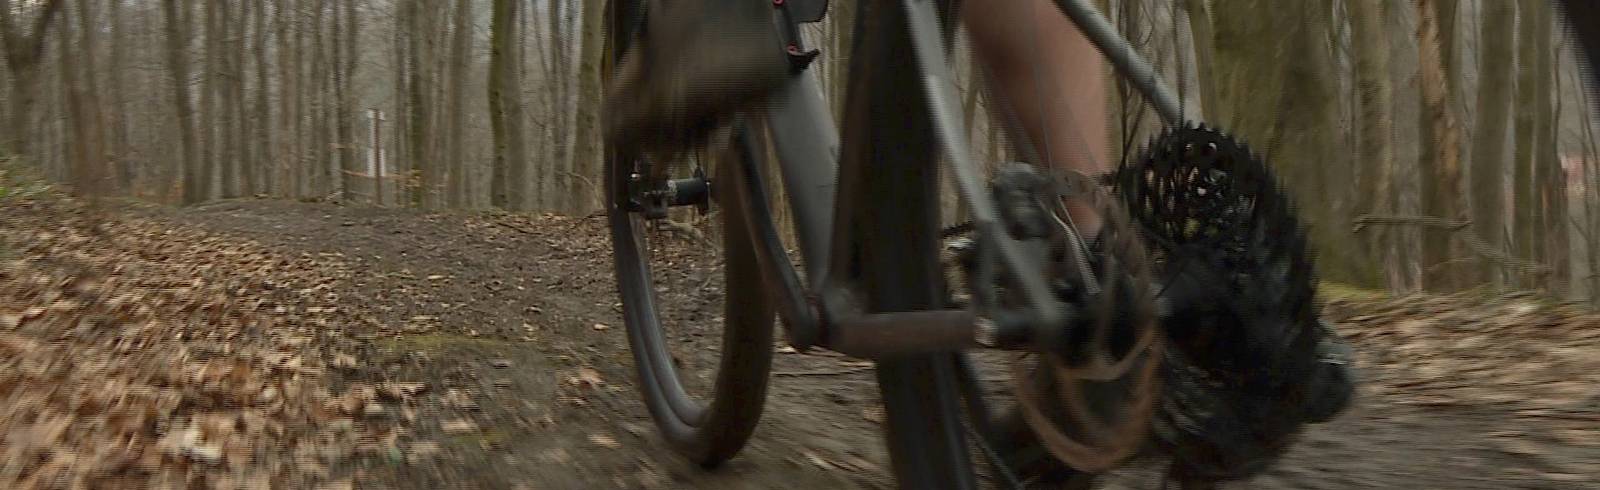 Mountainbike: Über Stock und Stein im Wienerwald